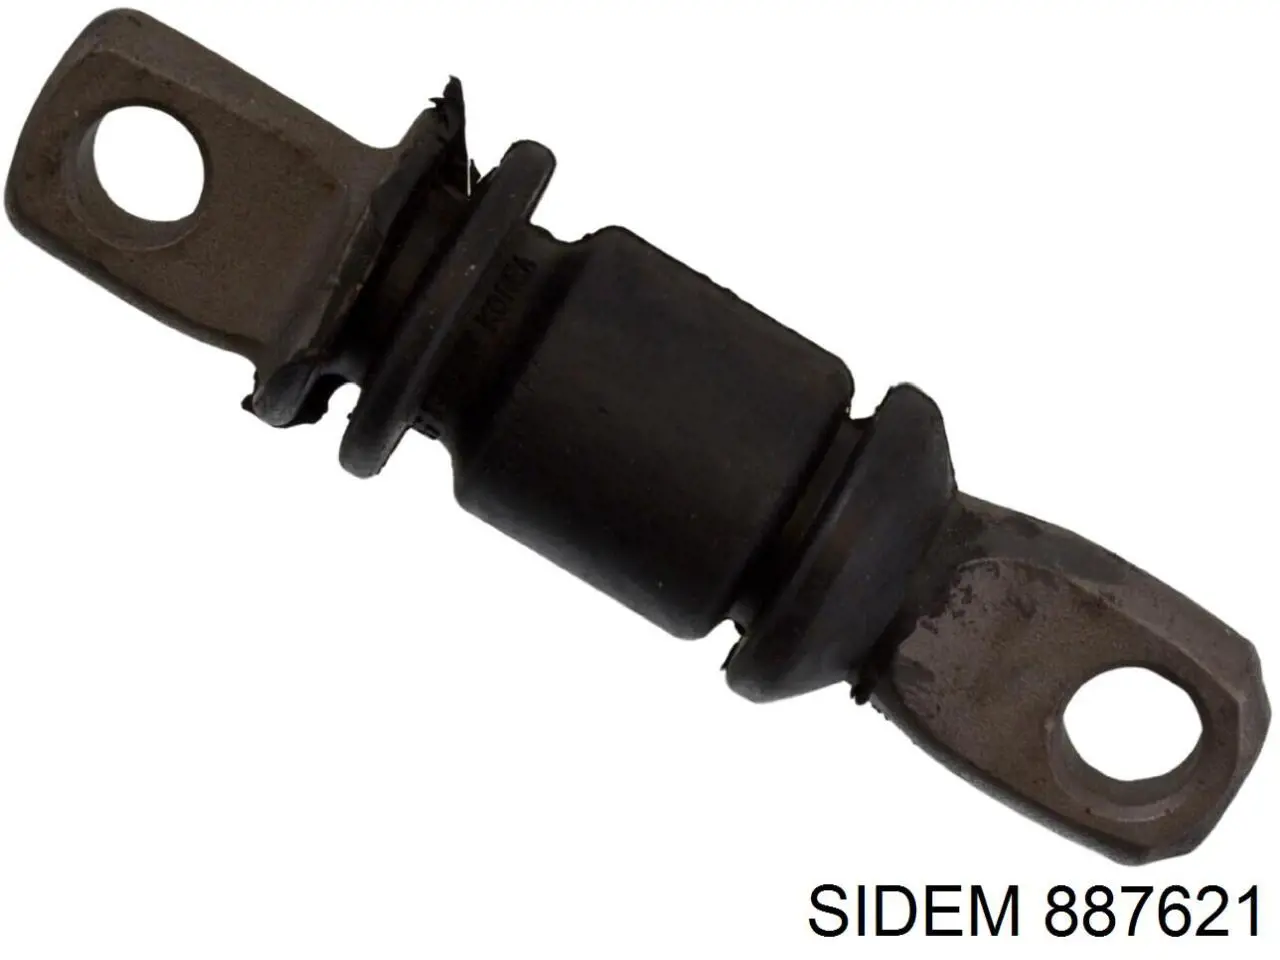 887621 Sidem silentblock de suspensión delantero inferior